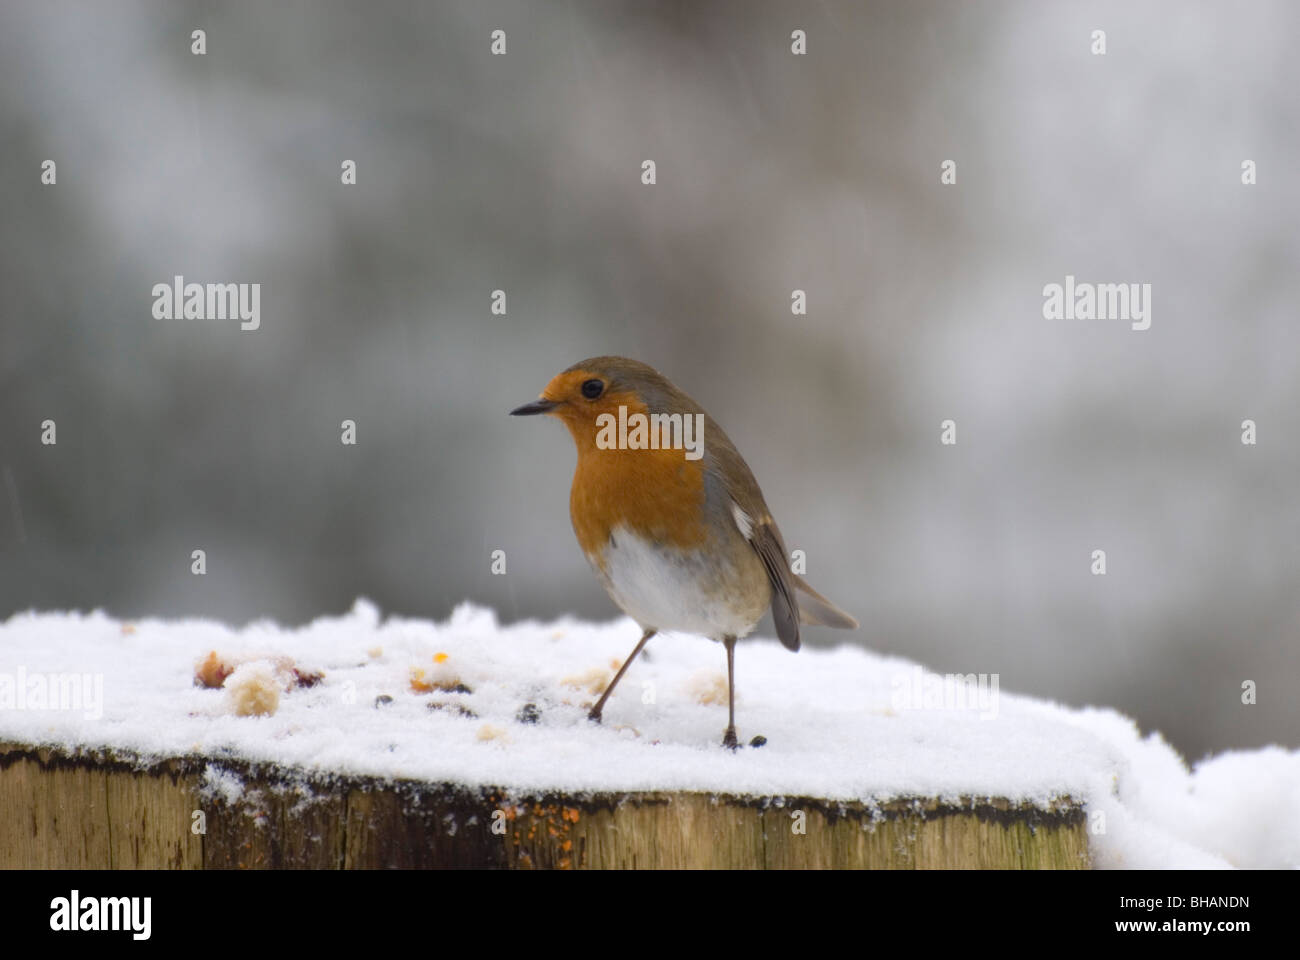 Robin on winter bird table Stock Photo